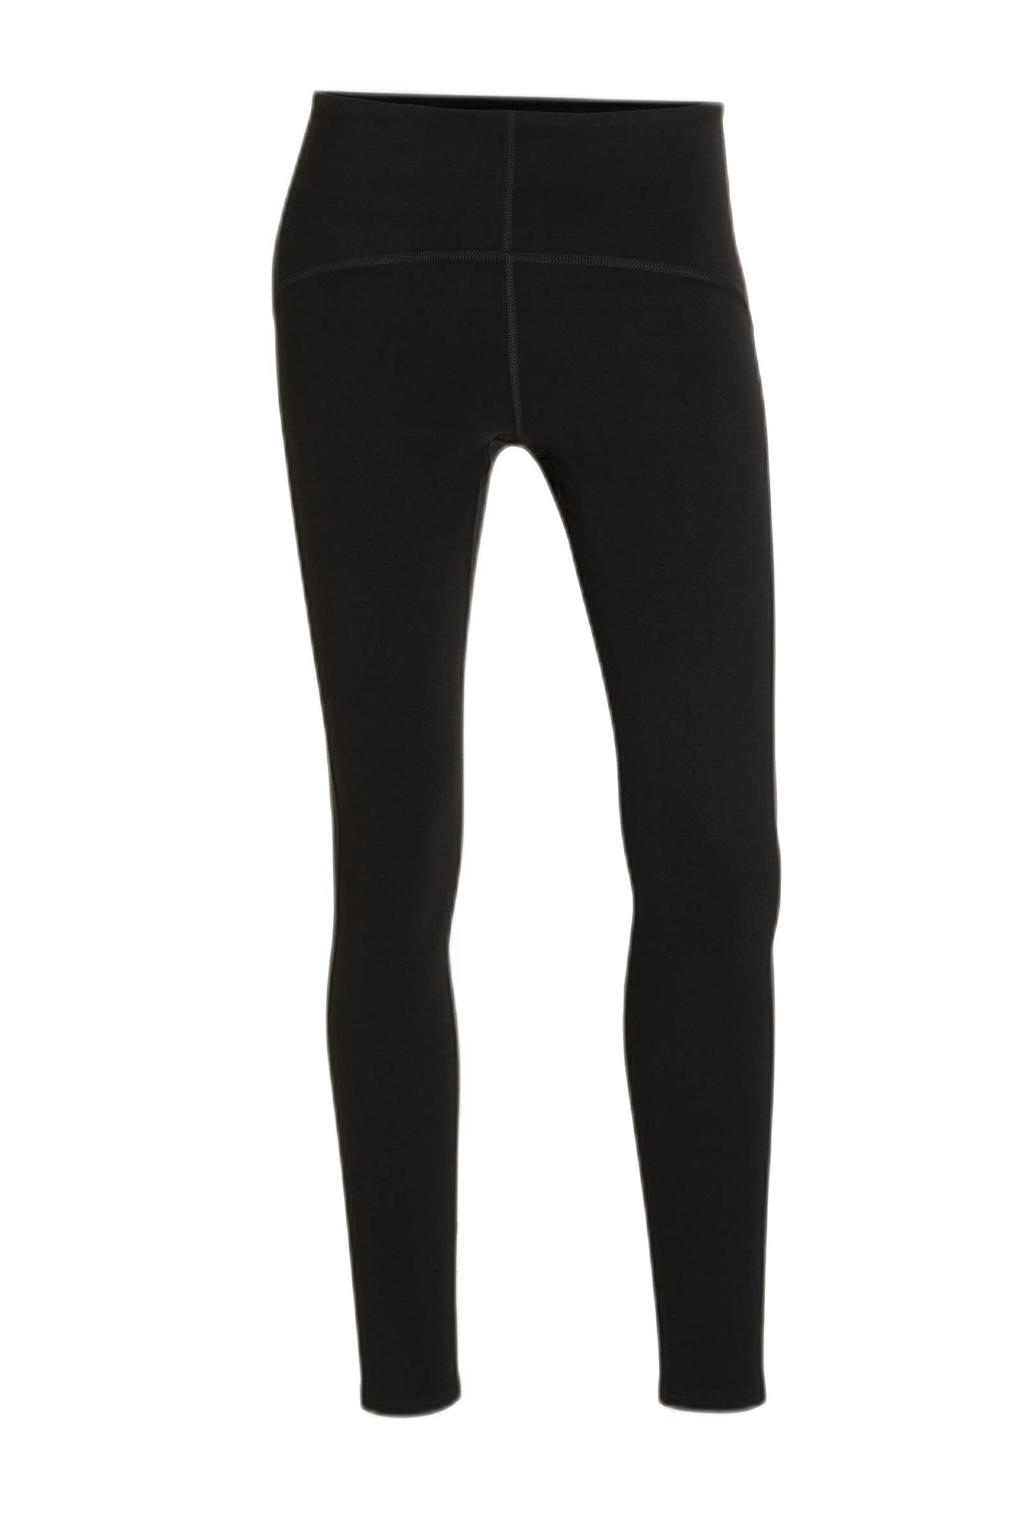 Zwarte dames C&A sportlegging van nylon met slim fit, regular waist en elastische tailleband